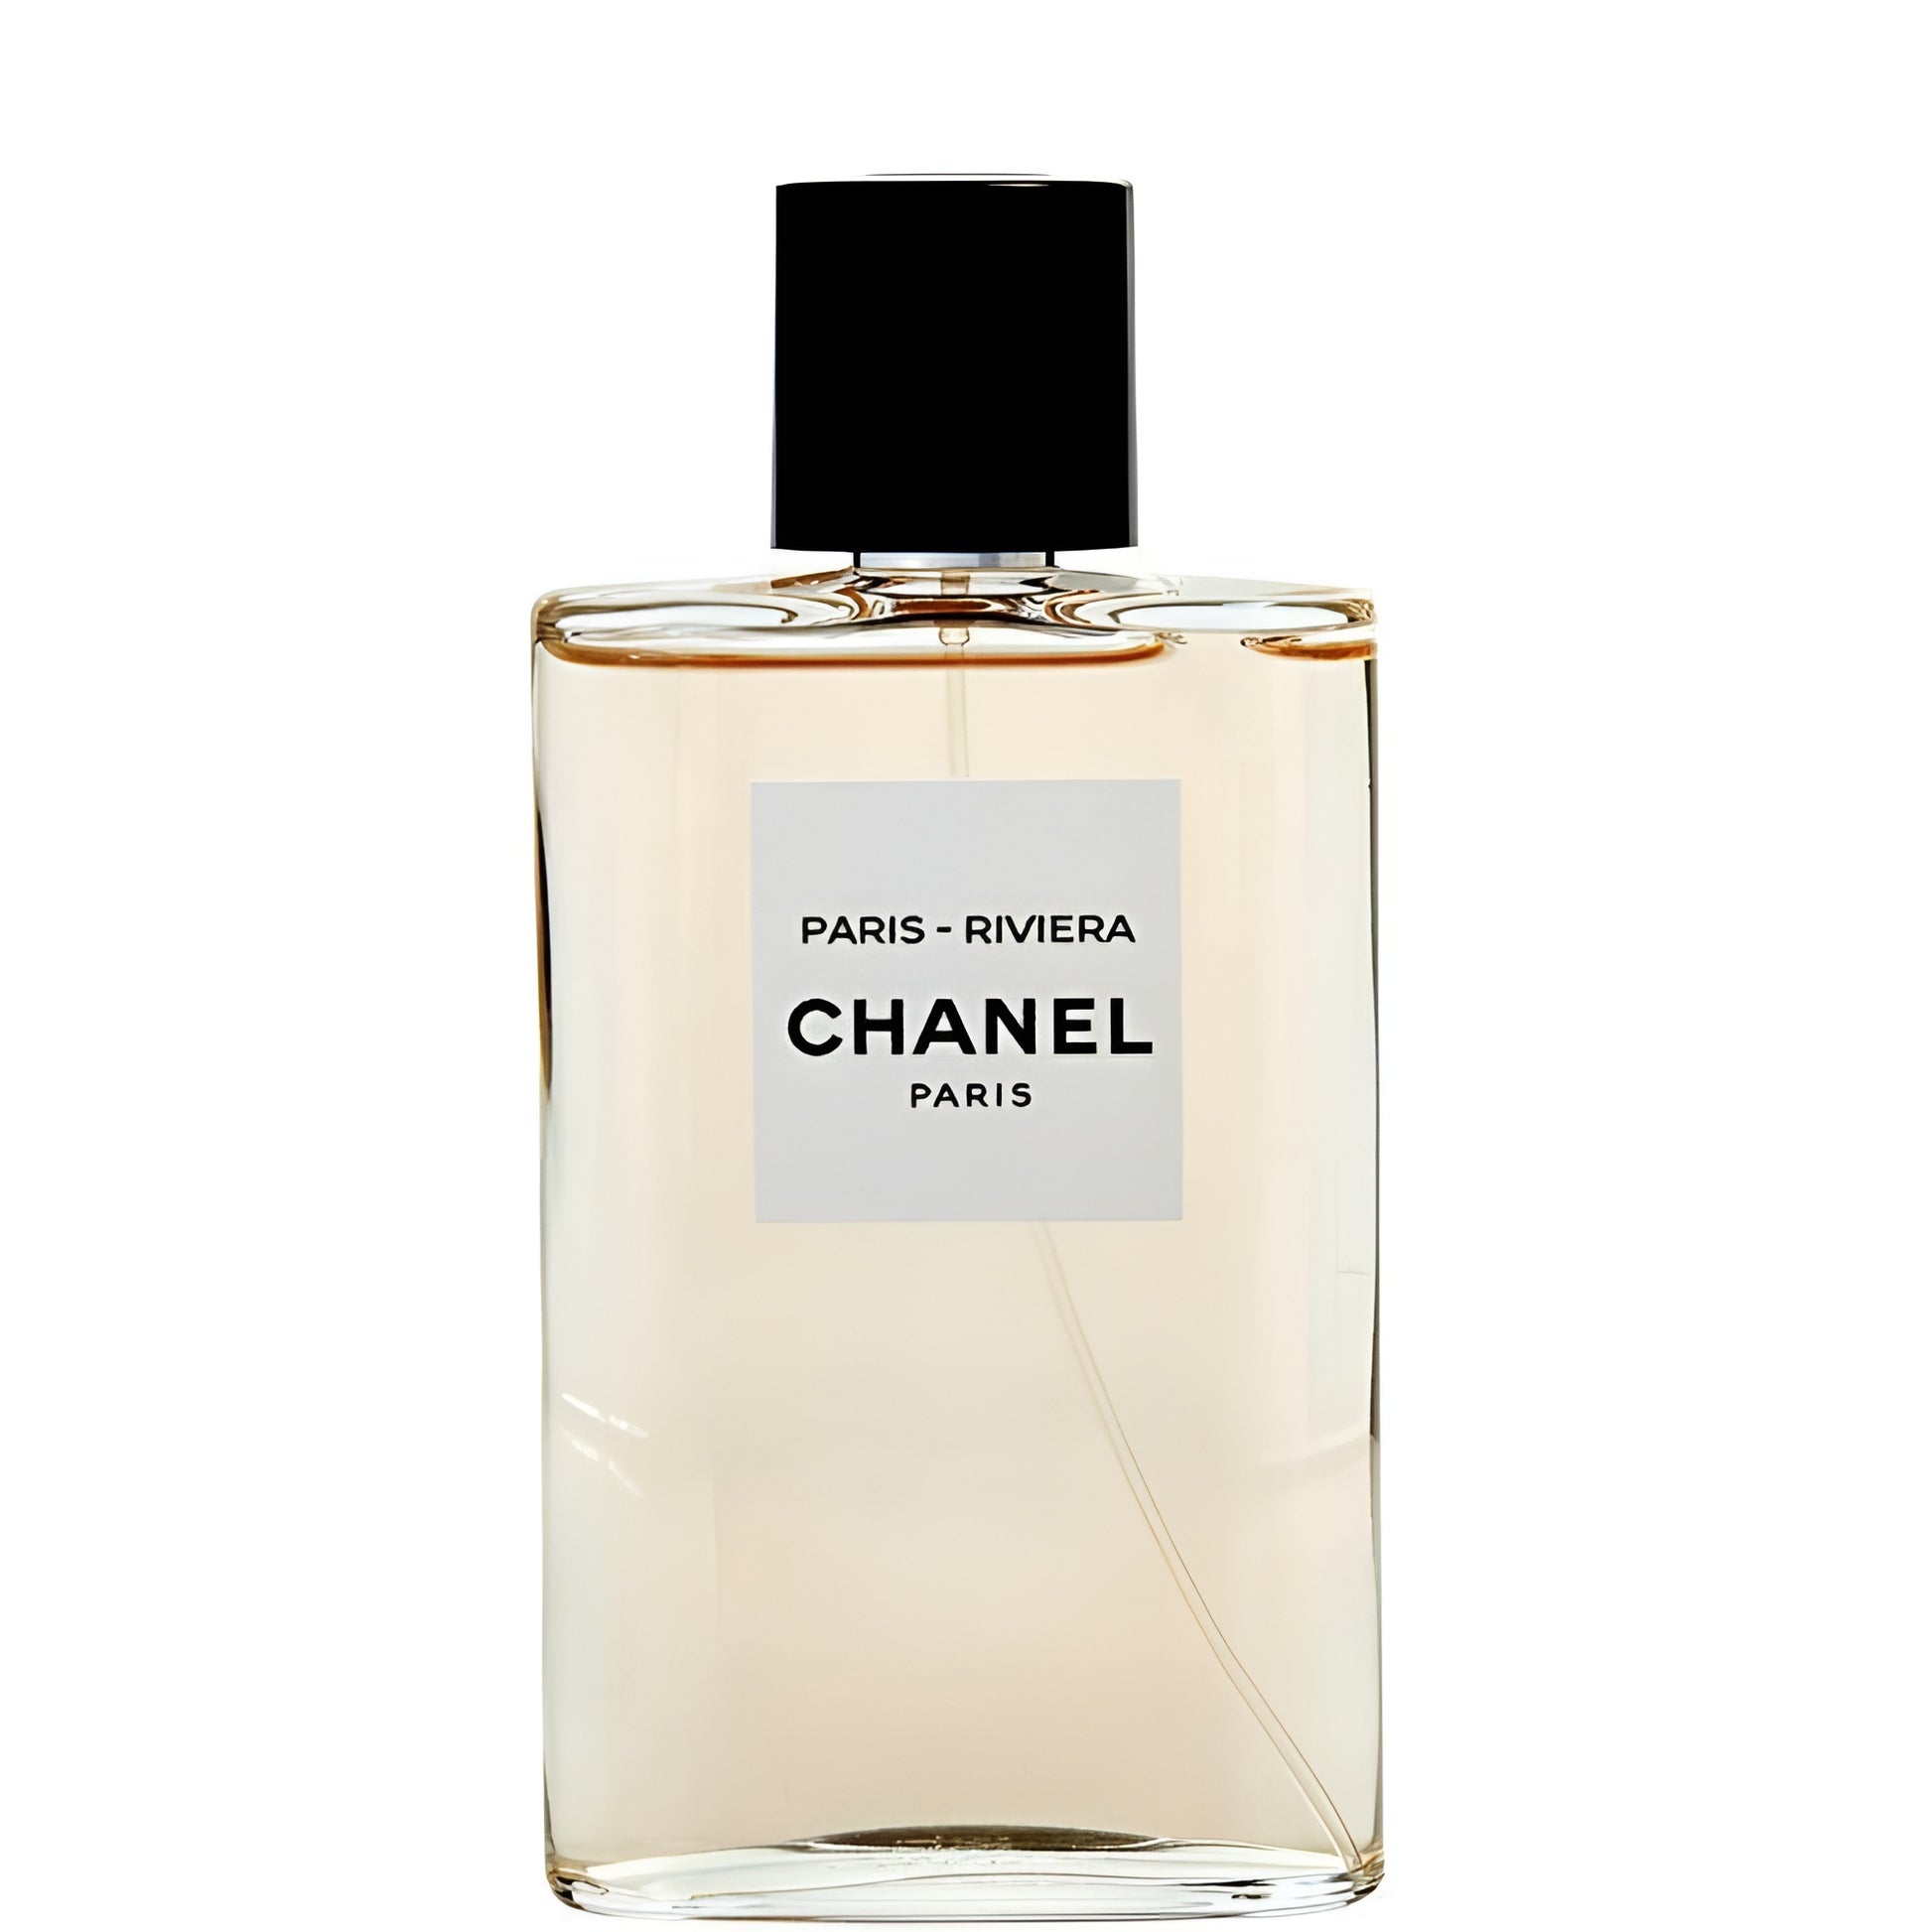 Chanel Paris-Riviera - Eau de Toilette